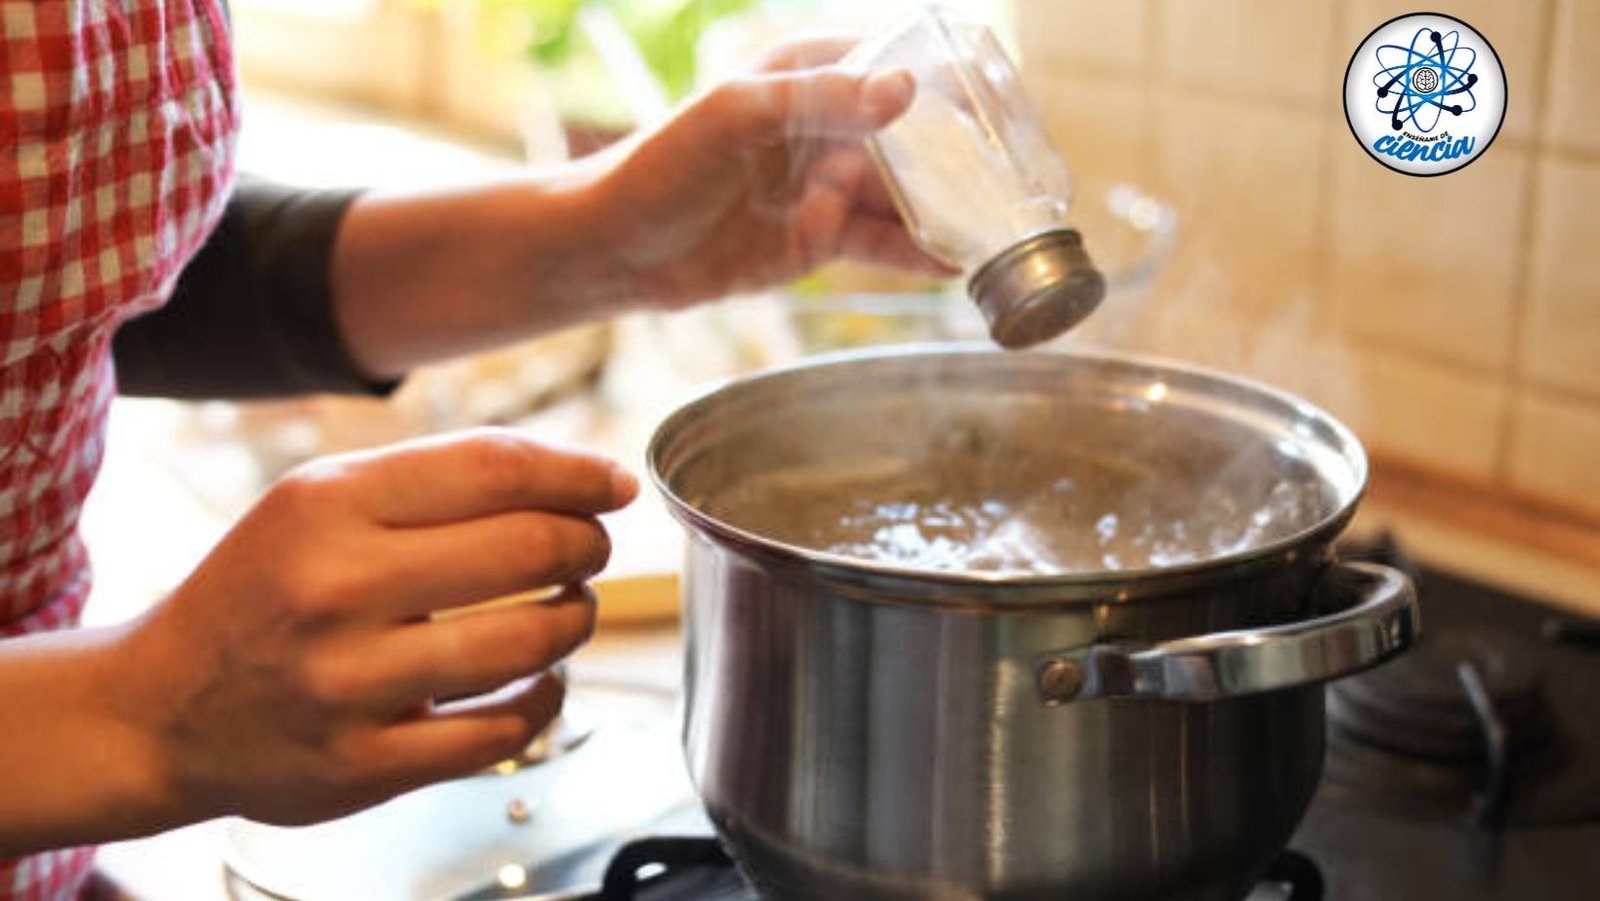 Descubre el truco infalible para eliminar el exceso de sal de tus platos